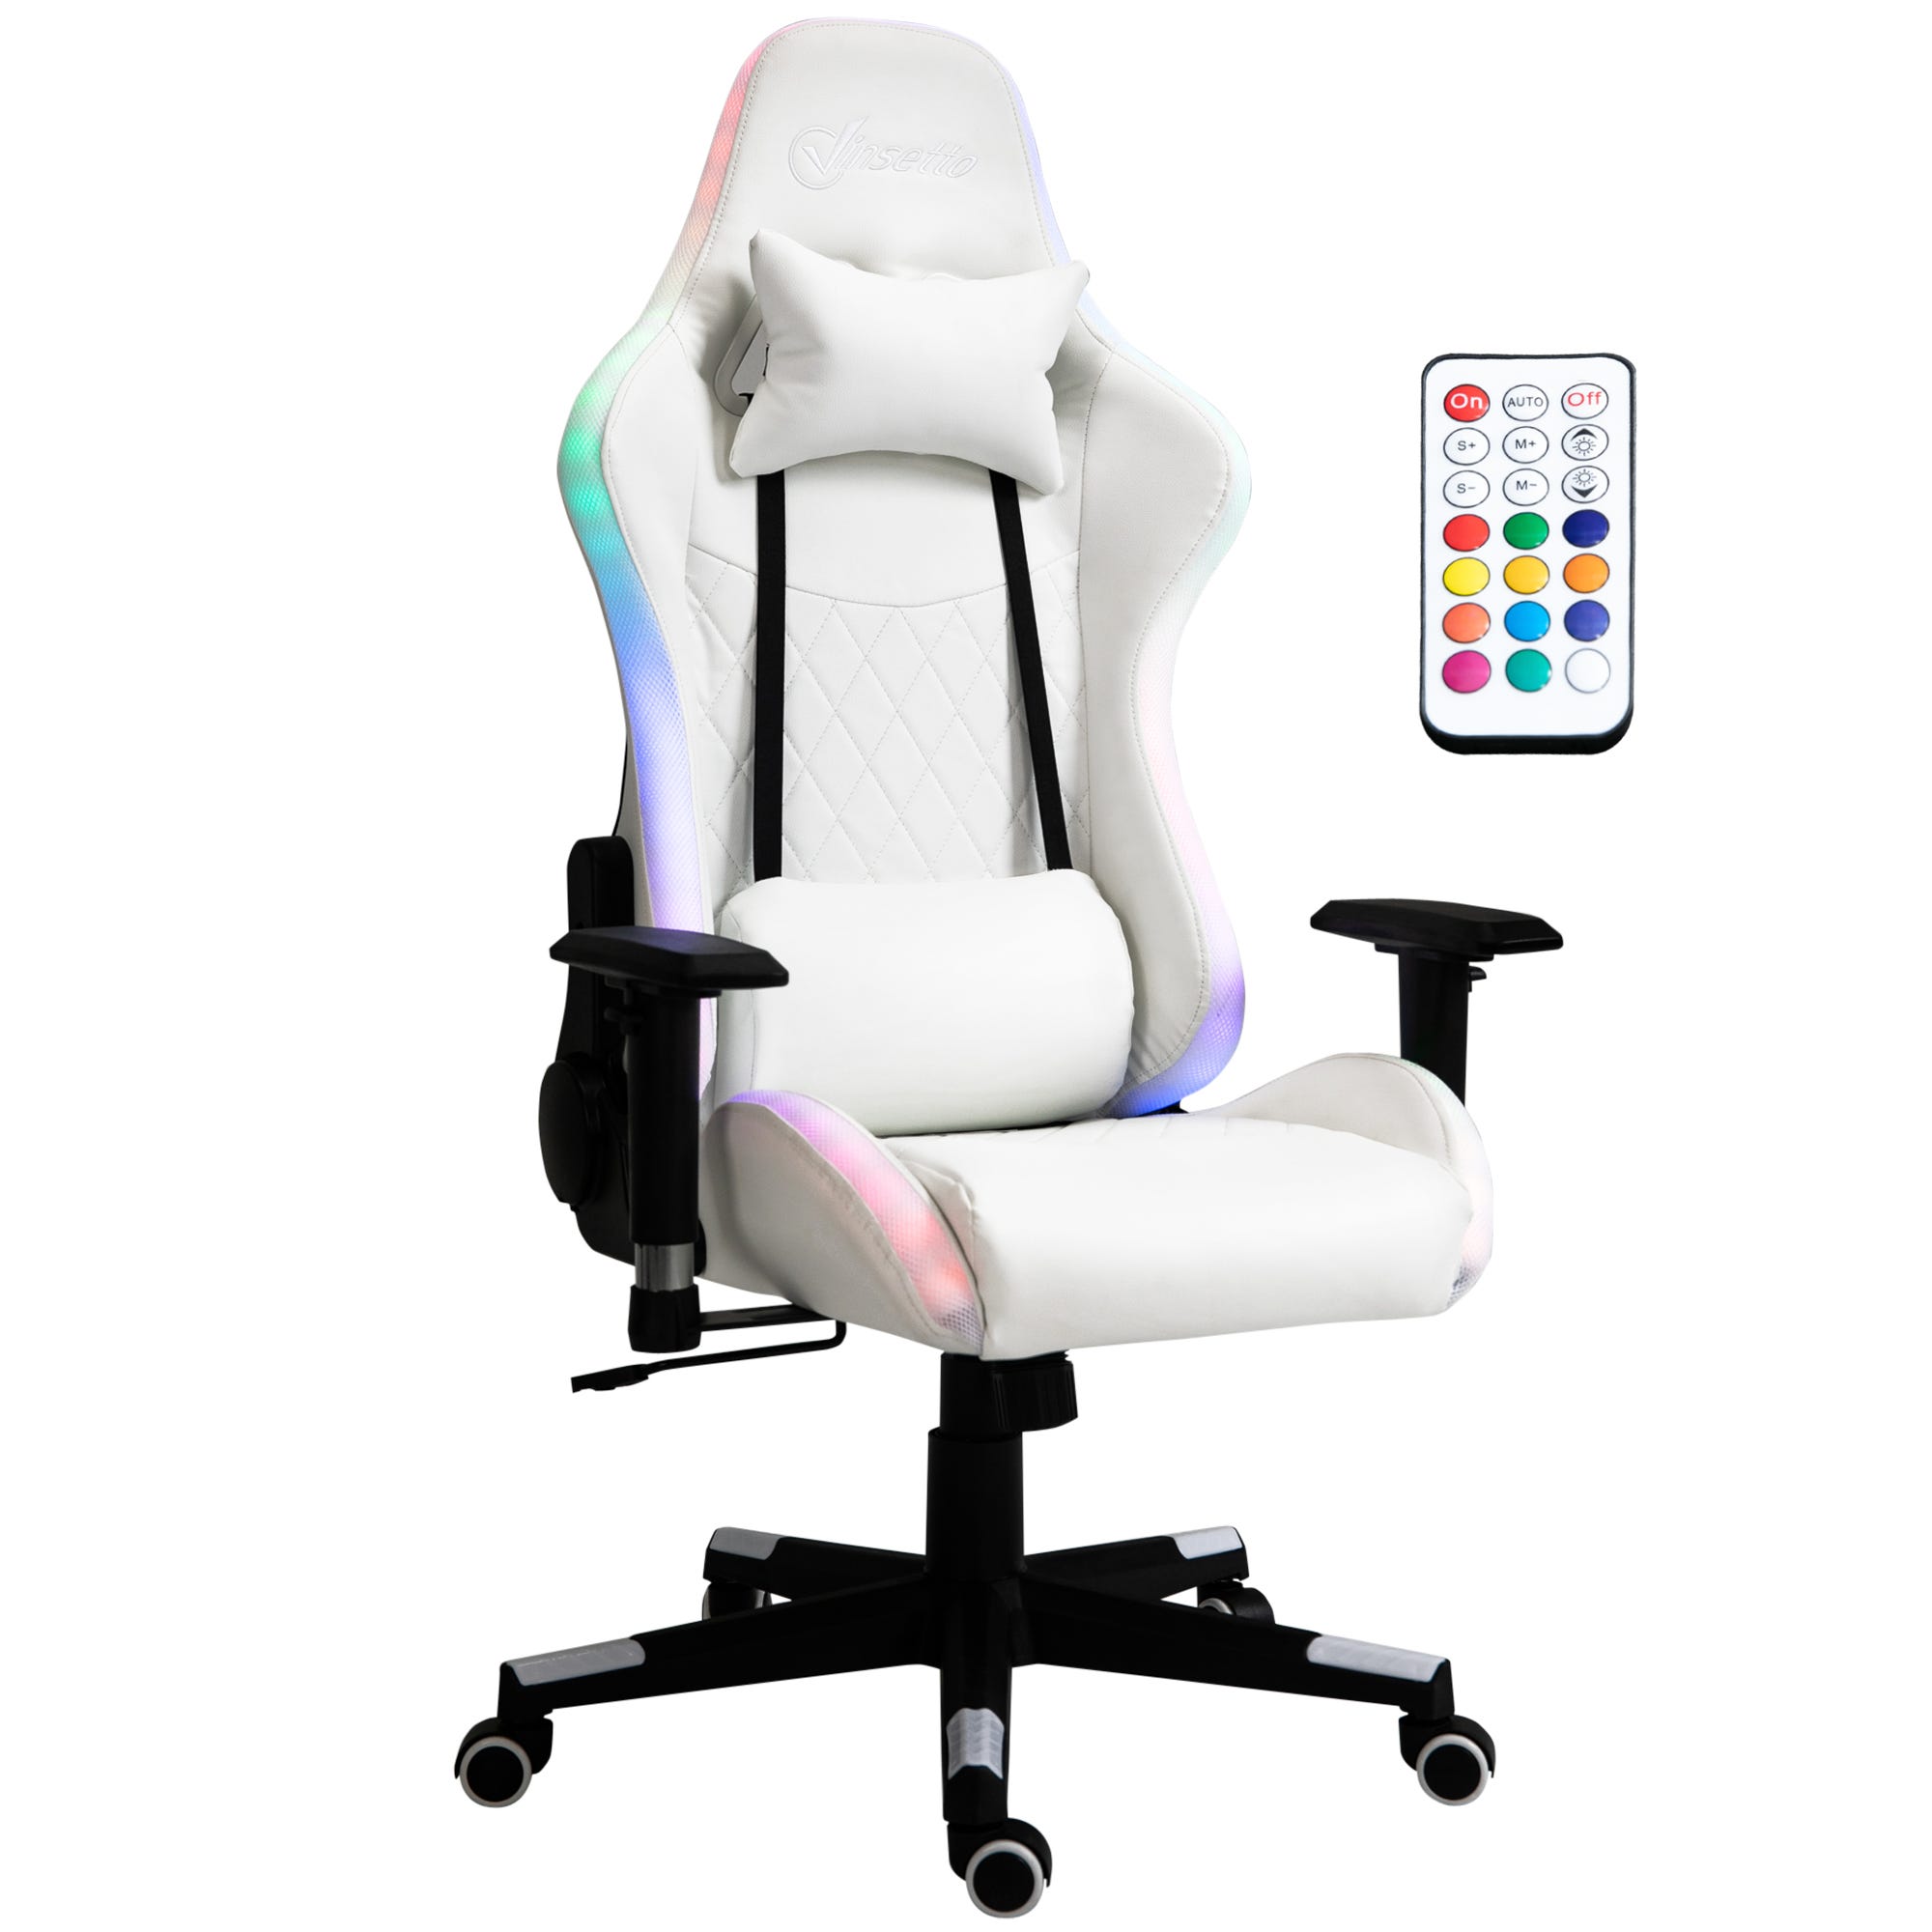 Silla de juegos con luces LED RGB ergonómica, silla de escritorio para  computadora de oficina, silla reclinable giratoria de altura ajustable,  color